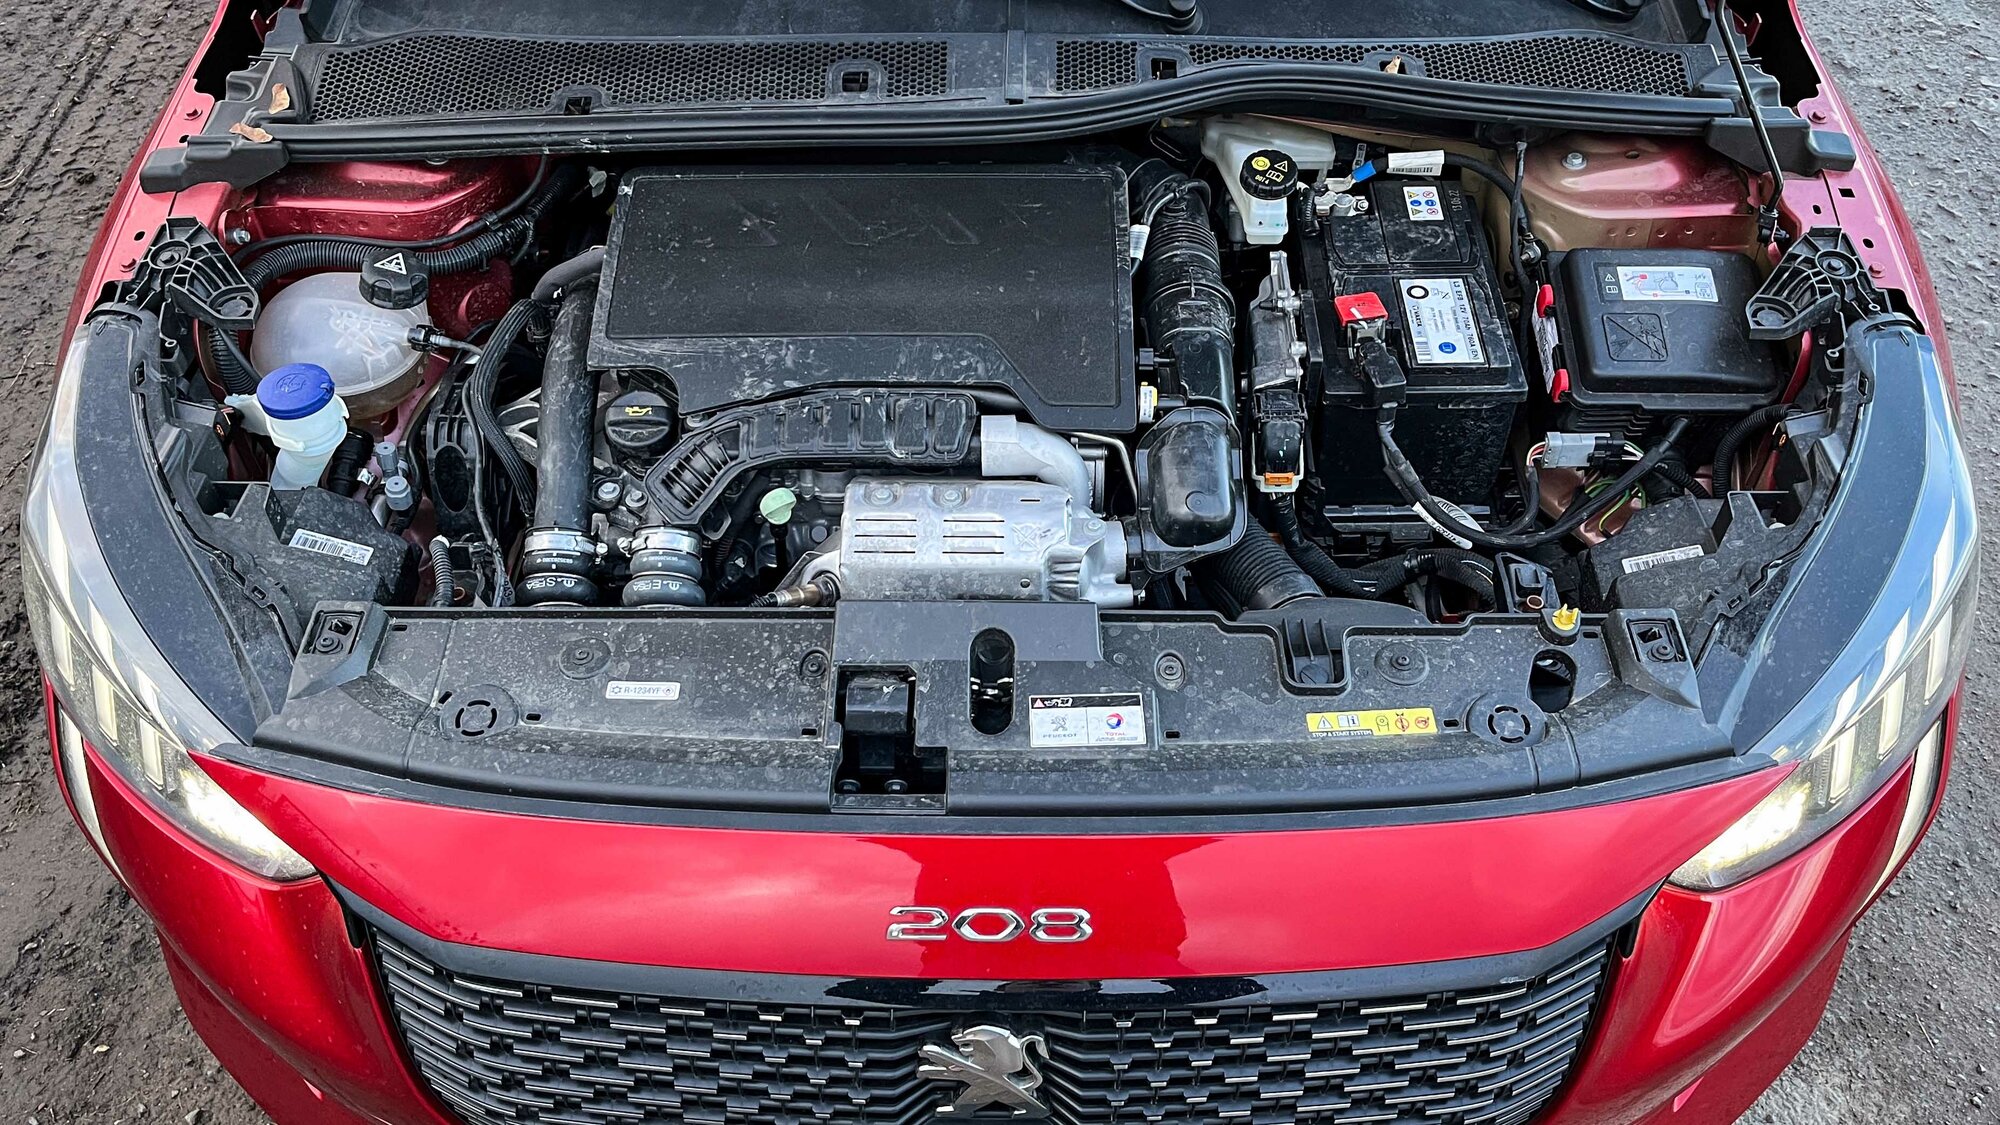 Peugeot 208 GT